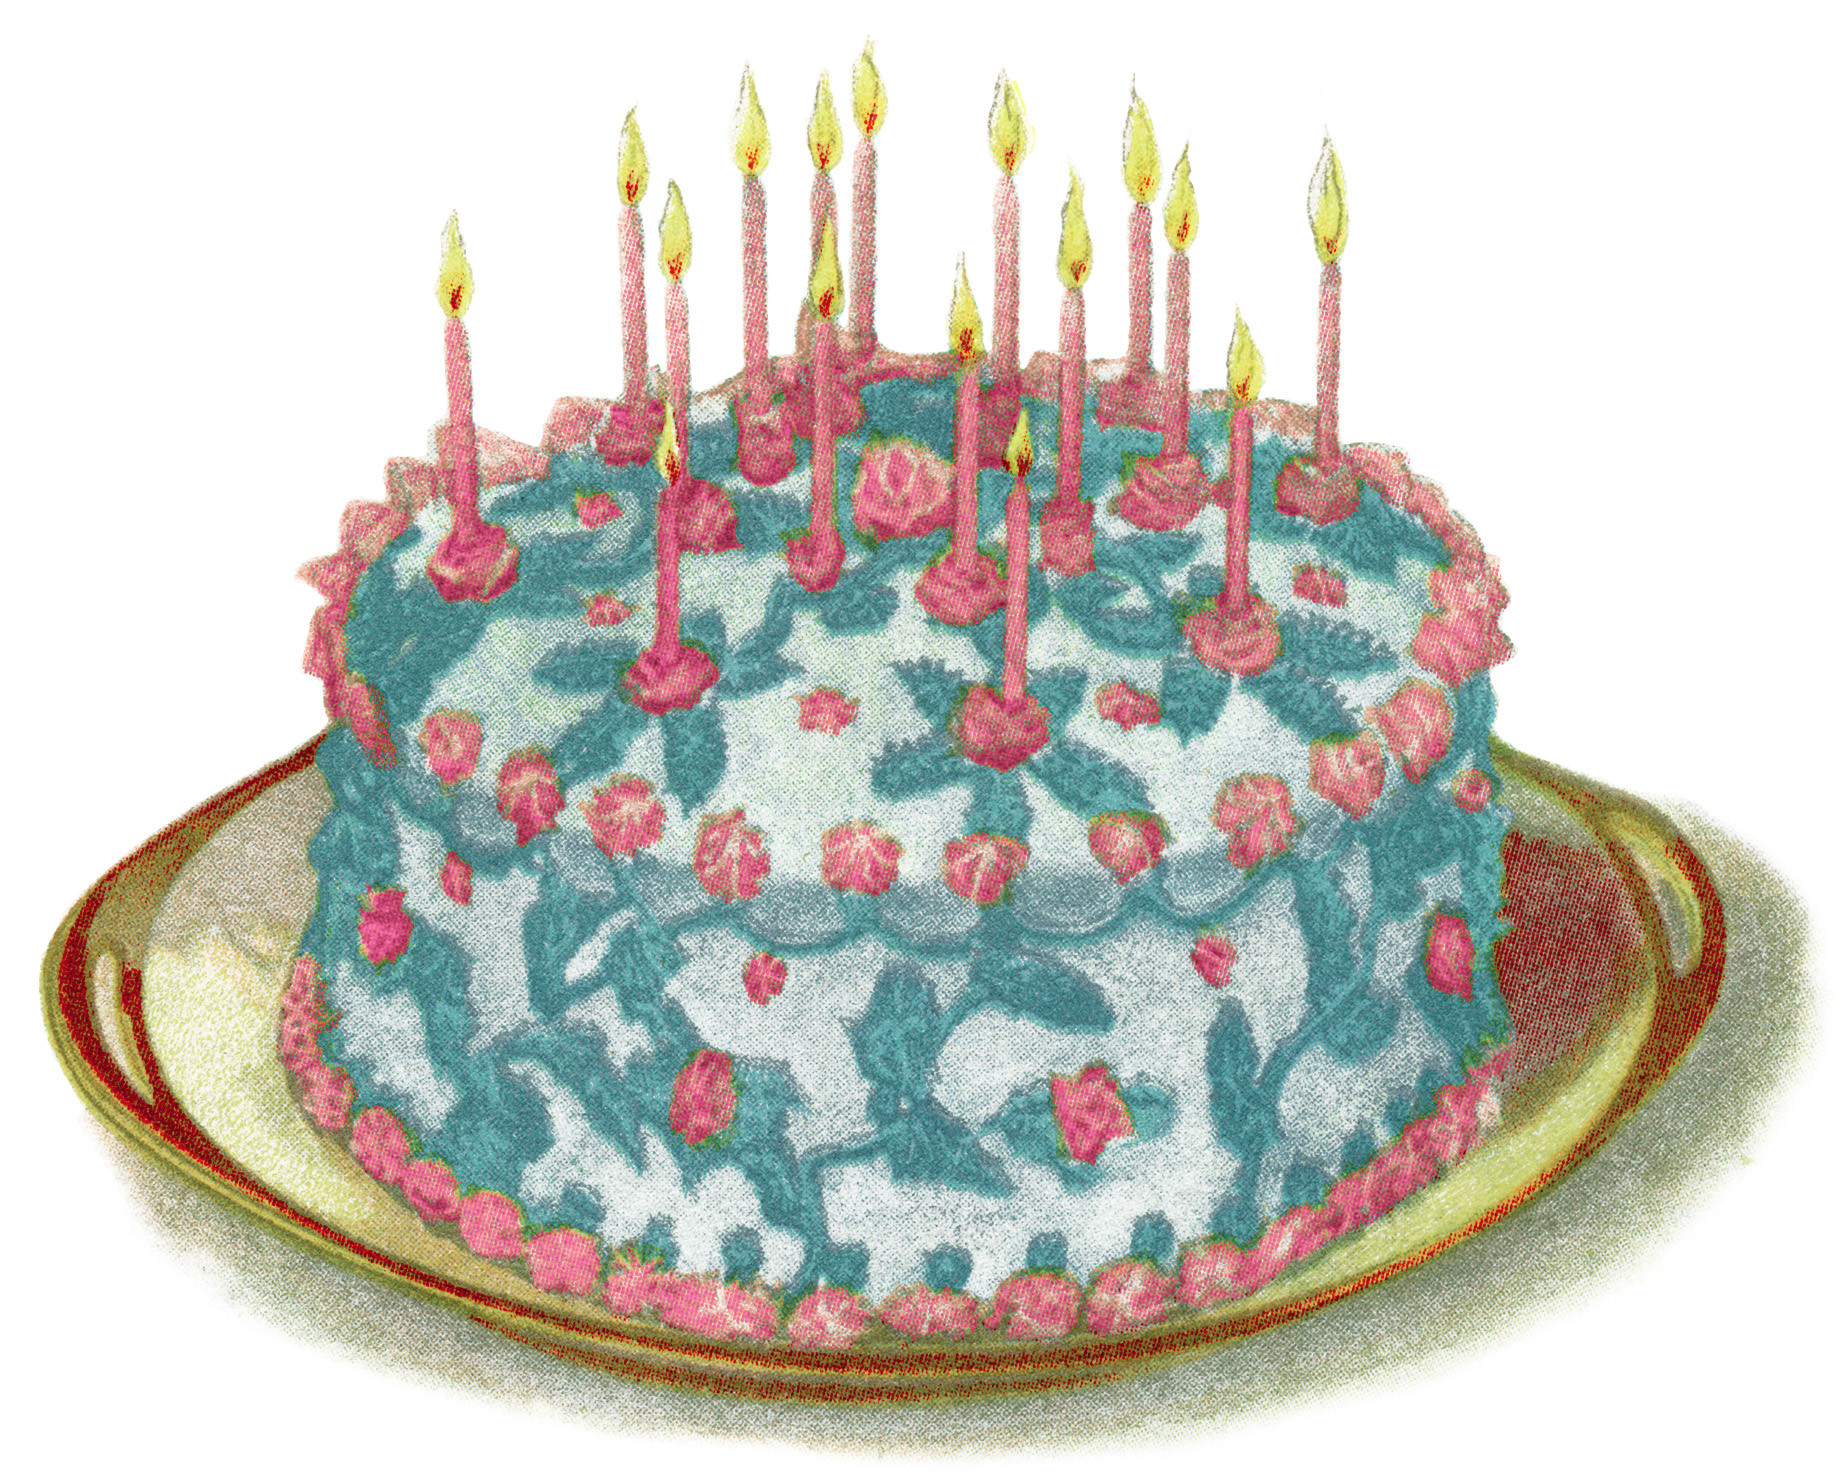 Birthday Cake Illustration
 Birthday